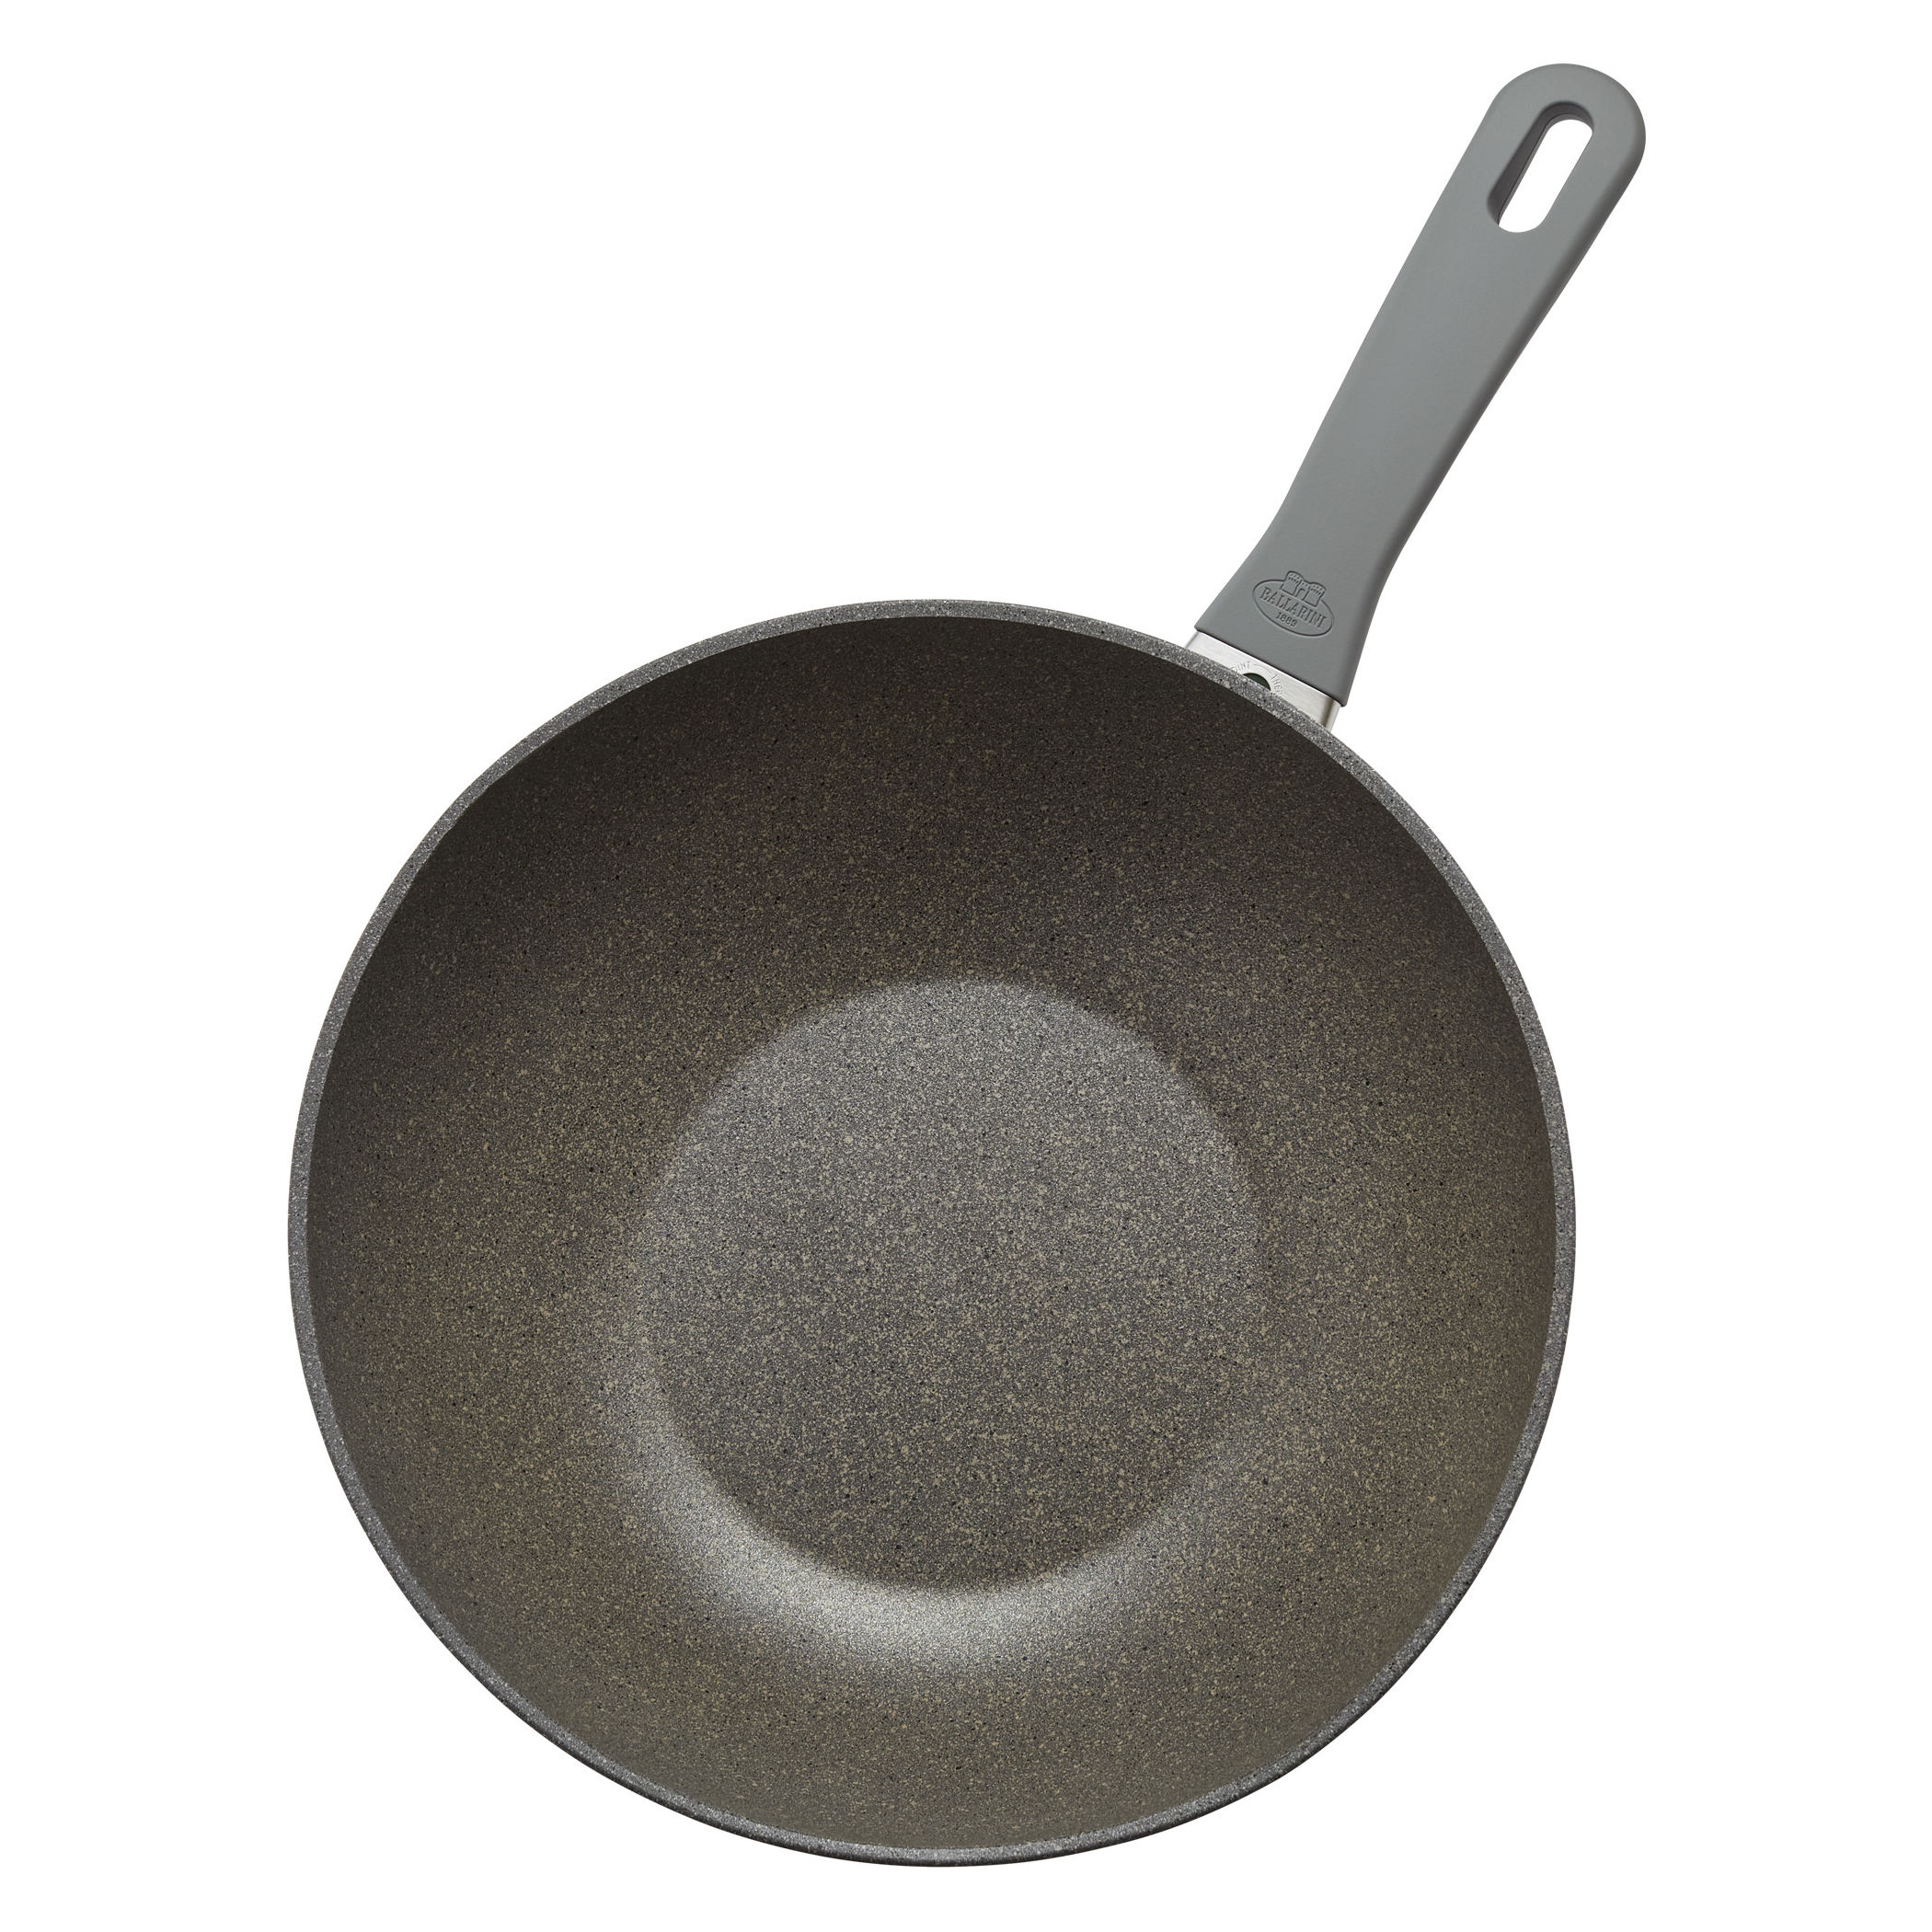 RAVELLI Italia Linea 20 Non-Stick Wok Stir Fry Pan, 11-inch